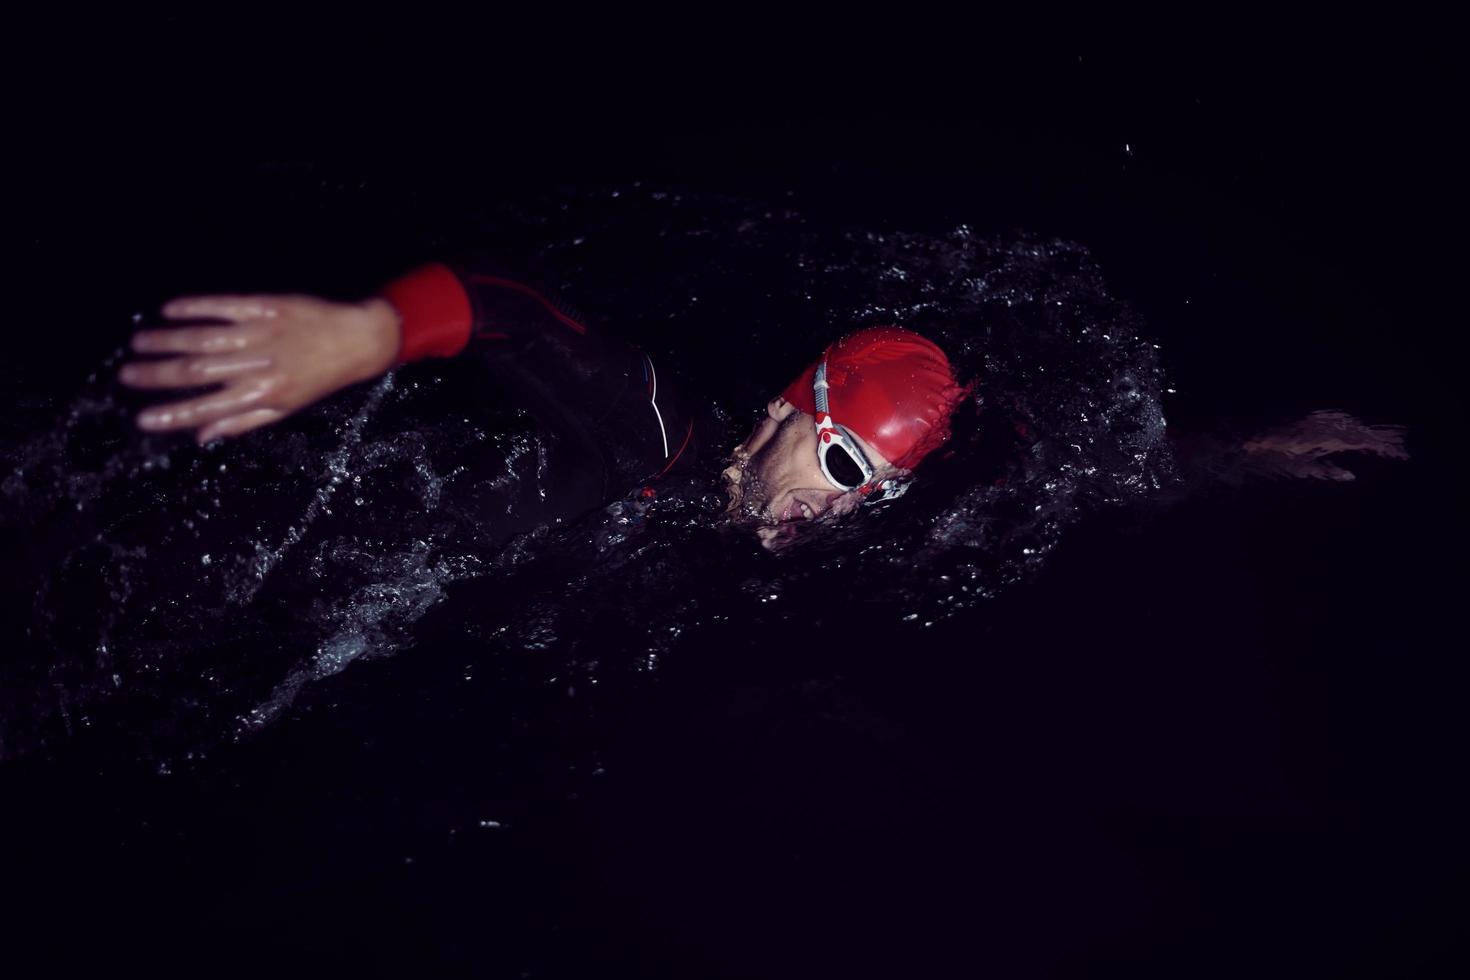 Triathlon-Athlet schwimmt in dunkler Nacht und trägt einen Neoprenanzug foto